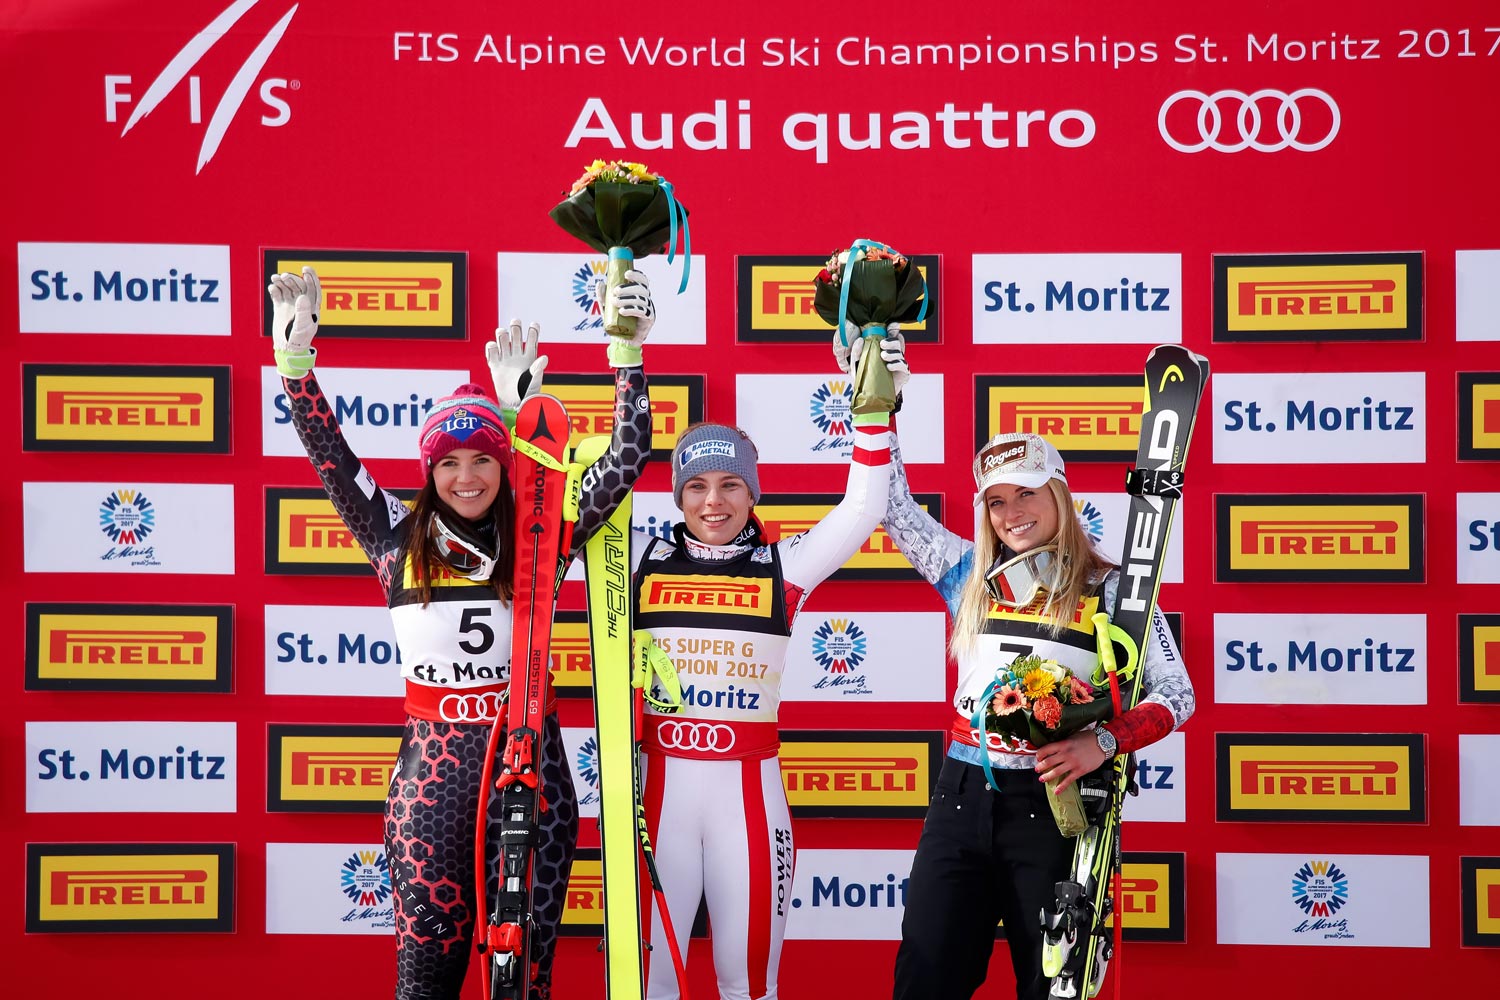 Campionati mondiali di sci alpino 2017 St. Moritz, Super G donne, podio